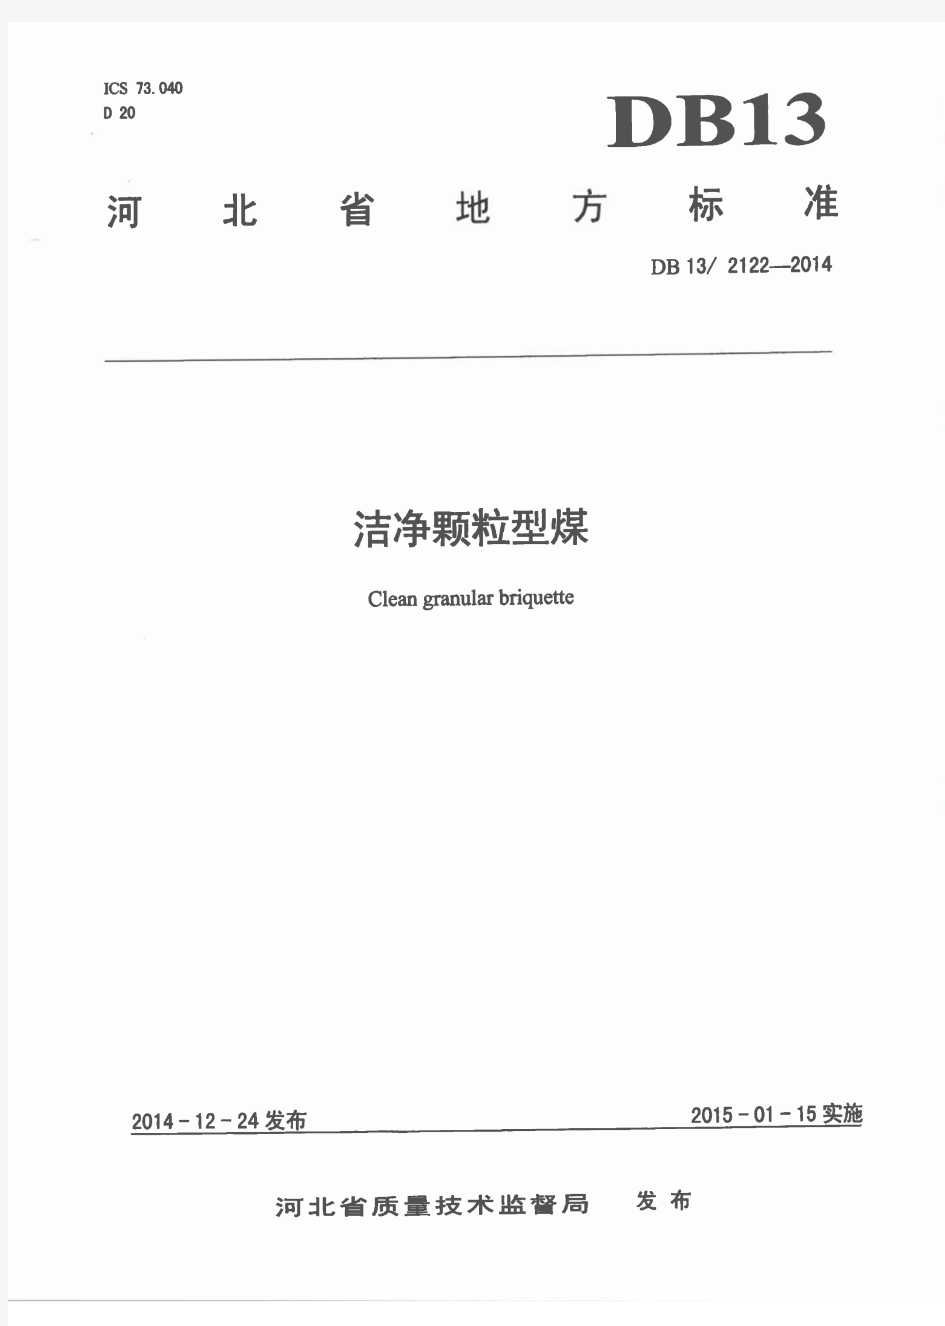 河北省地方标准《洁净颗粒型煤》(DB 13-2122-2014)